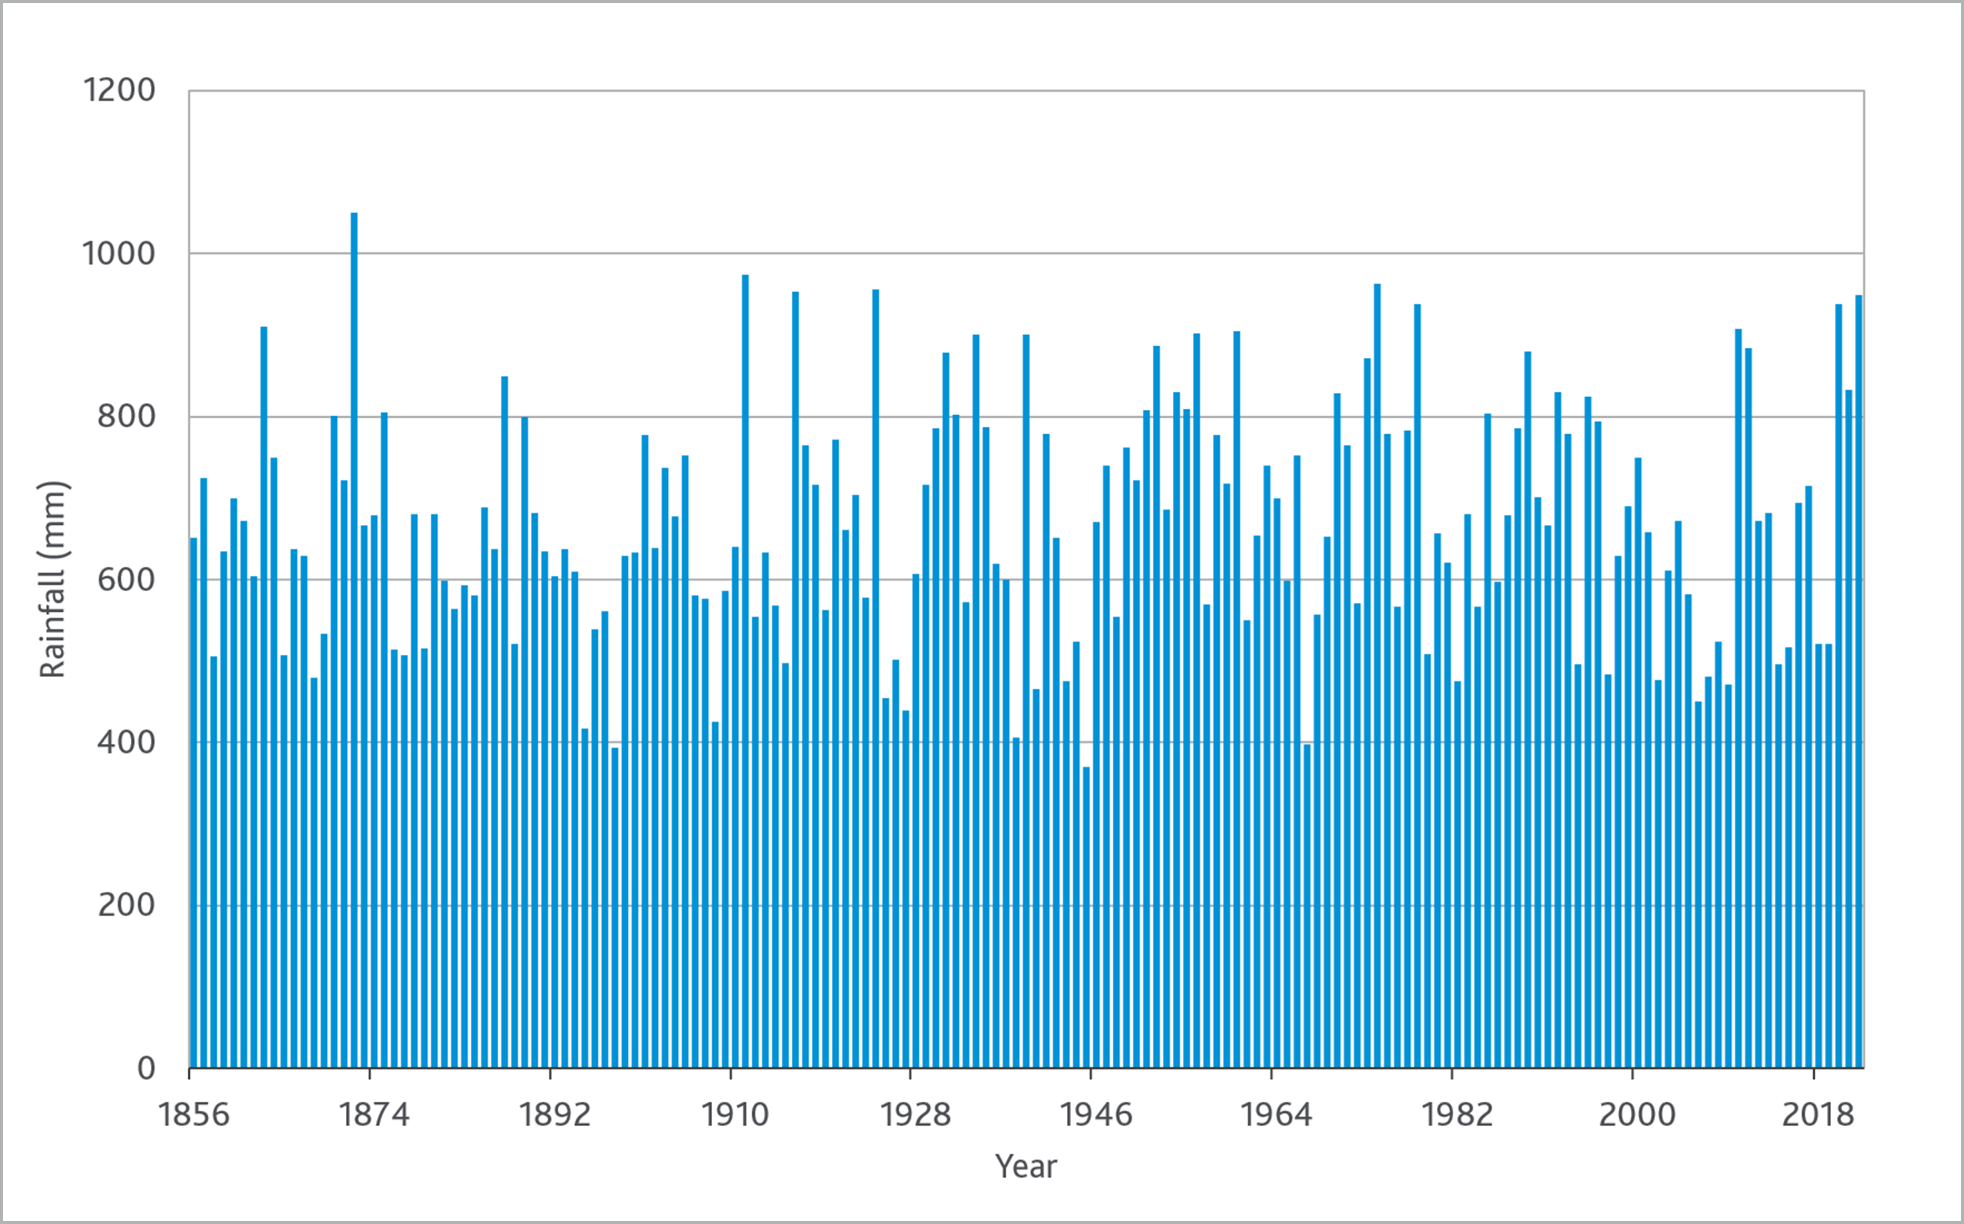 Graph of annual rainfall (mm) at Yan Yean Reservoir, 1856-2022